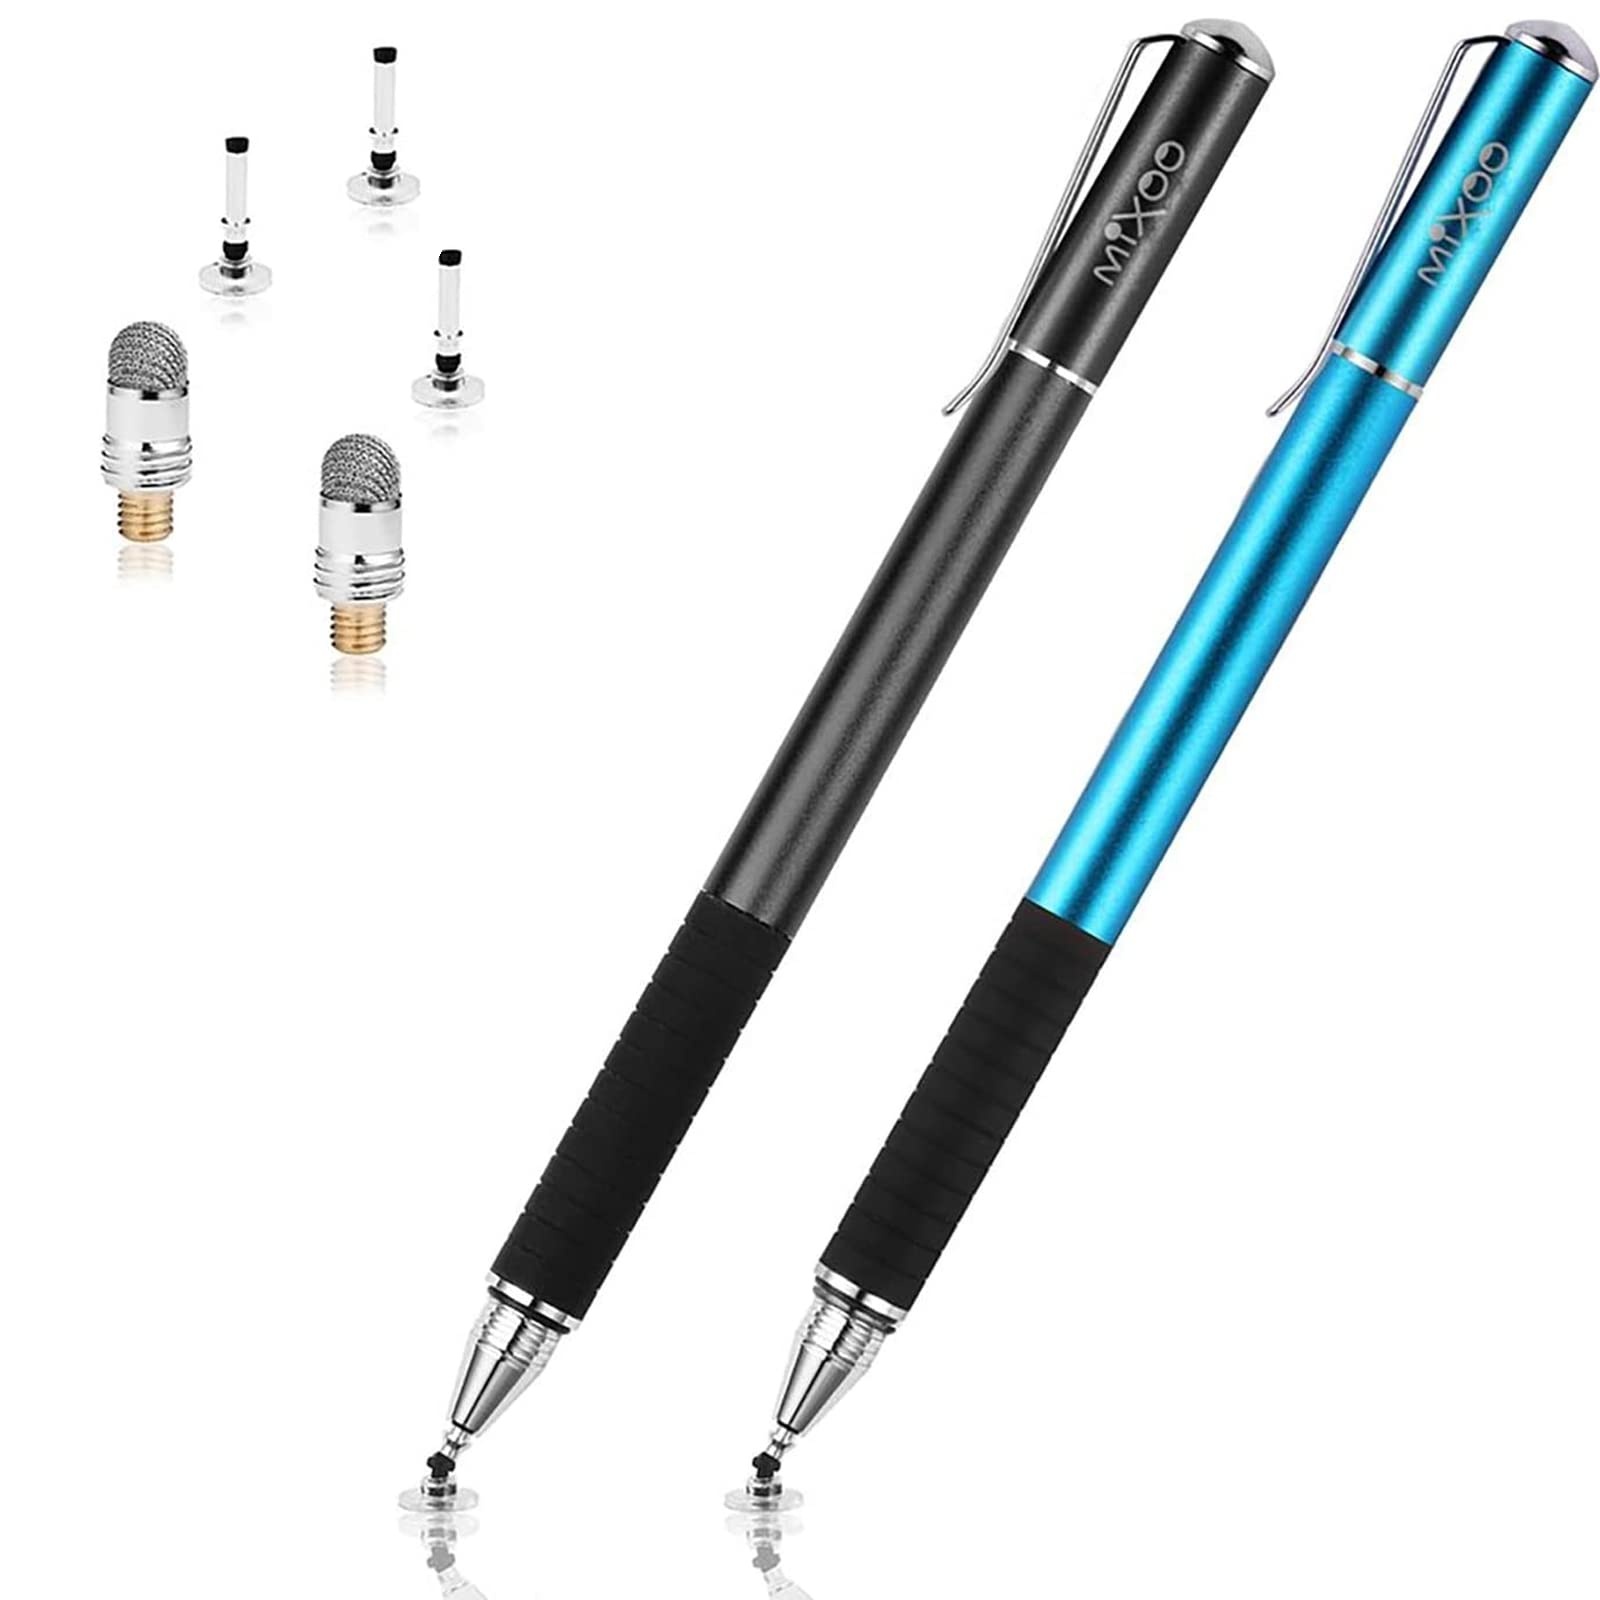 Mixoo Stift Präzision Disc Eingabestift Touchstift Stylus 2 in 1 Kapazitive Touchscreen Stift, kompatibel für Smartphones &Tablets (Shwarz + Blau)